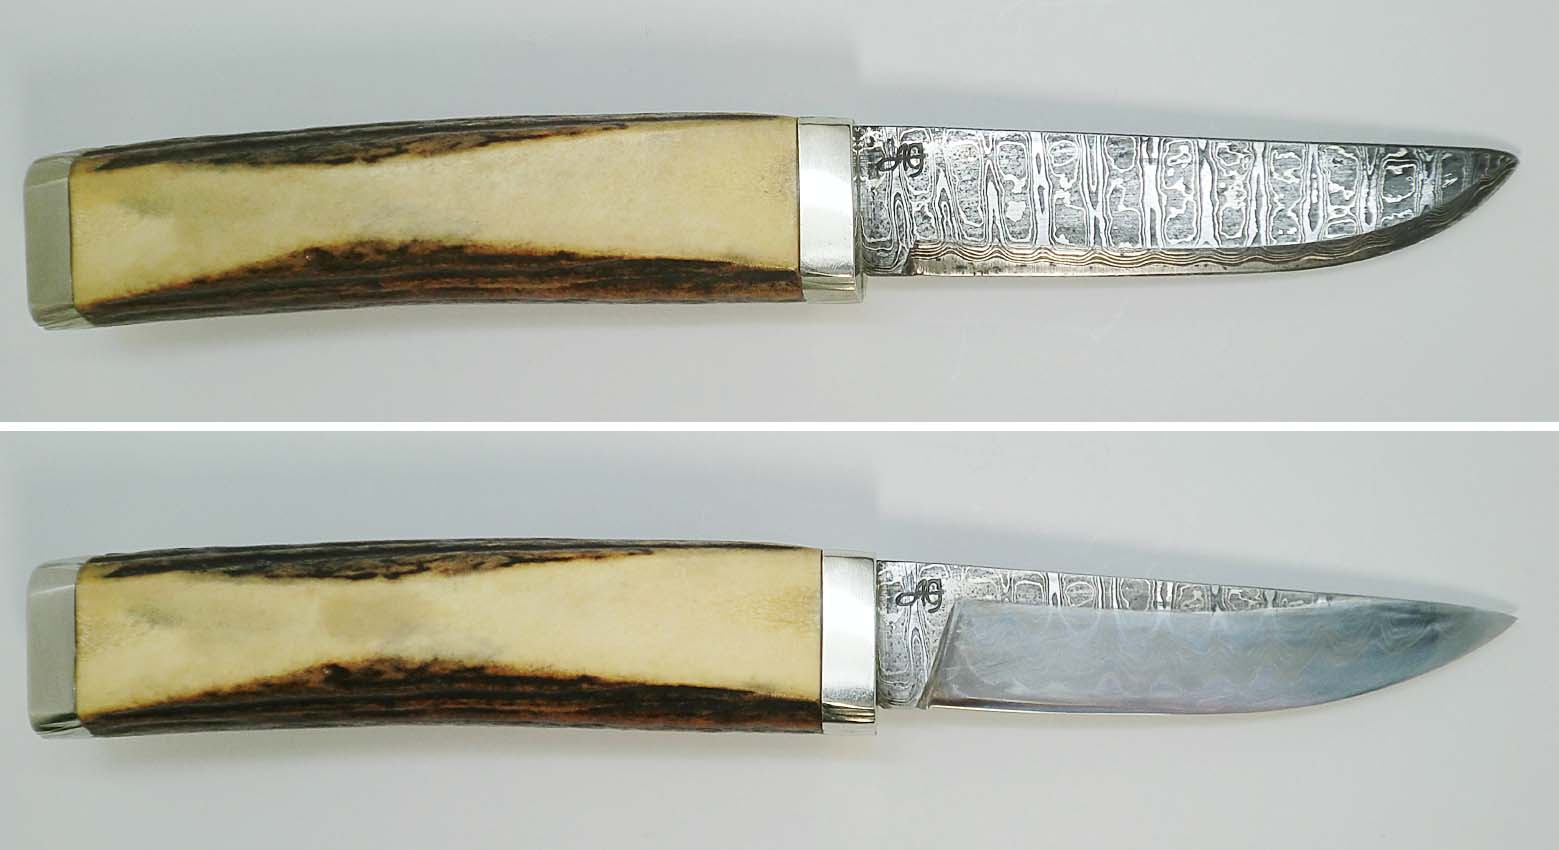 ナイフと菜切りの刃角: [刃物研ぎ・サトー] 鋏研ぎ 包丁研ぎ 各種刃物研ぎ